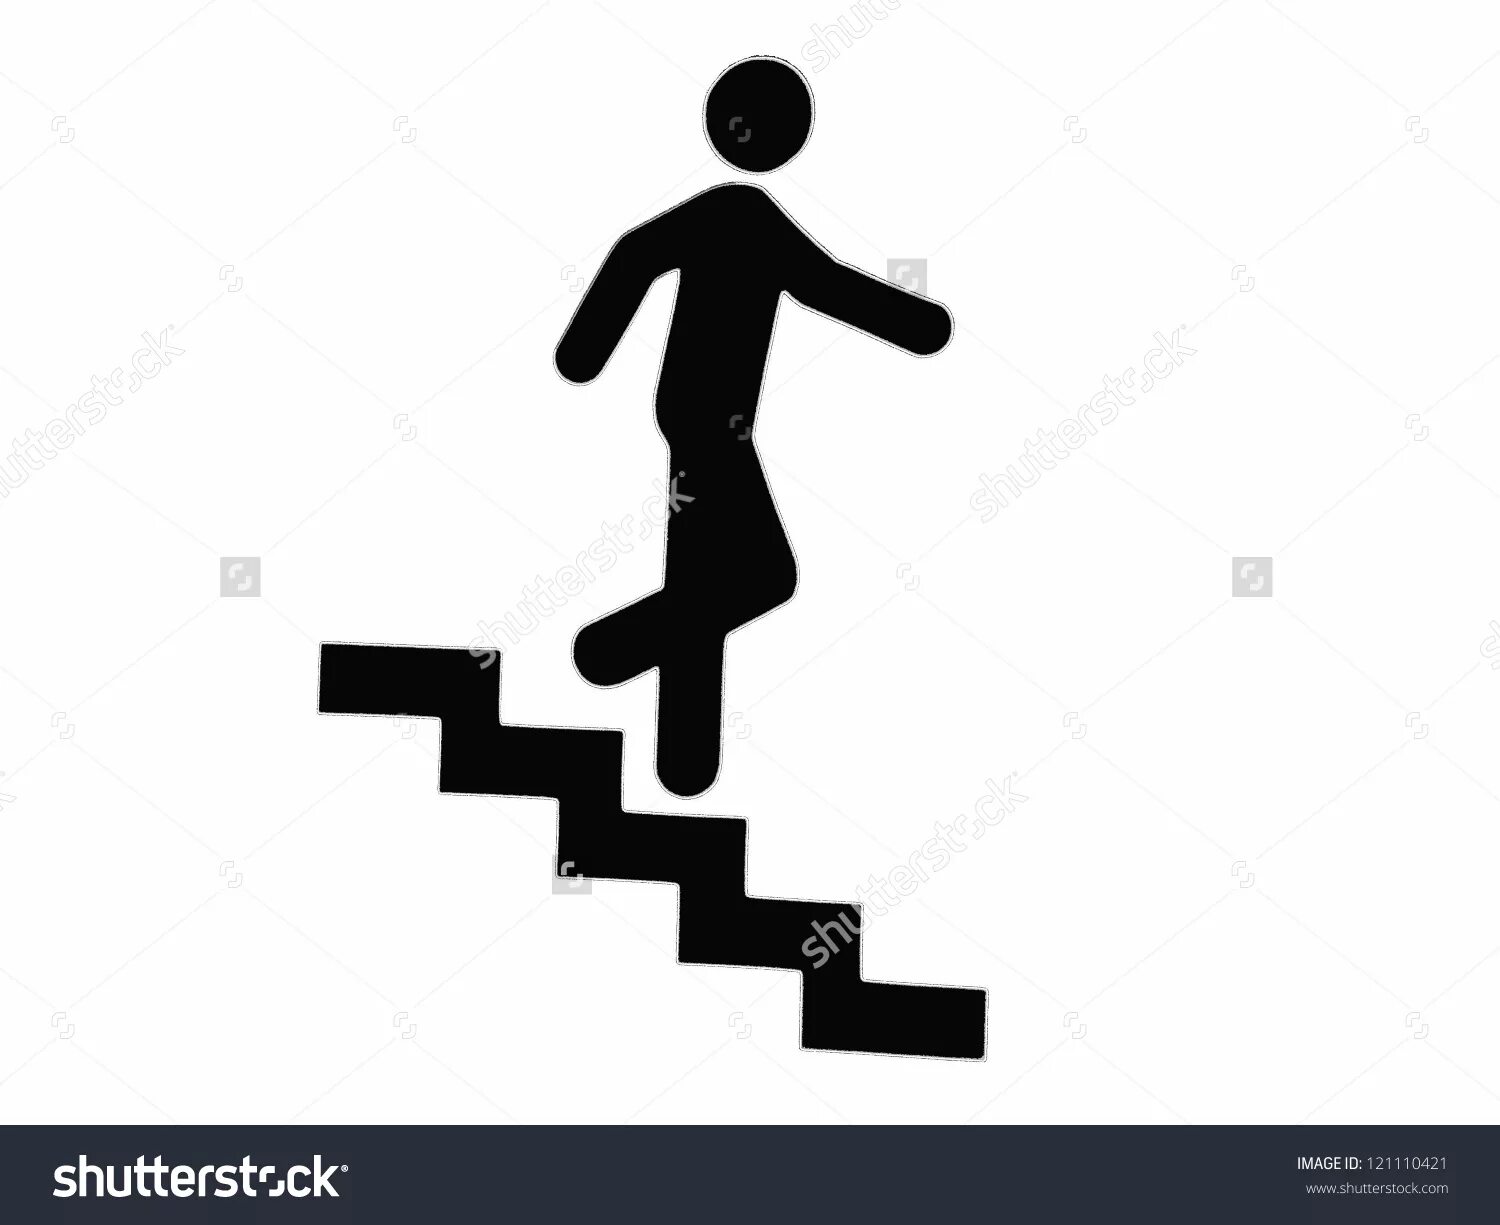 2 он поднимаясь по лестнице. Человек на лестнице. Человечек на лестнице. Человек спускается по лестнице. Человек поднимается по лестнице.